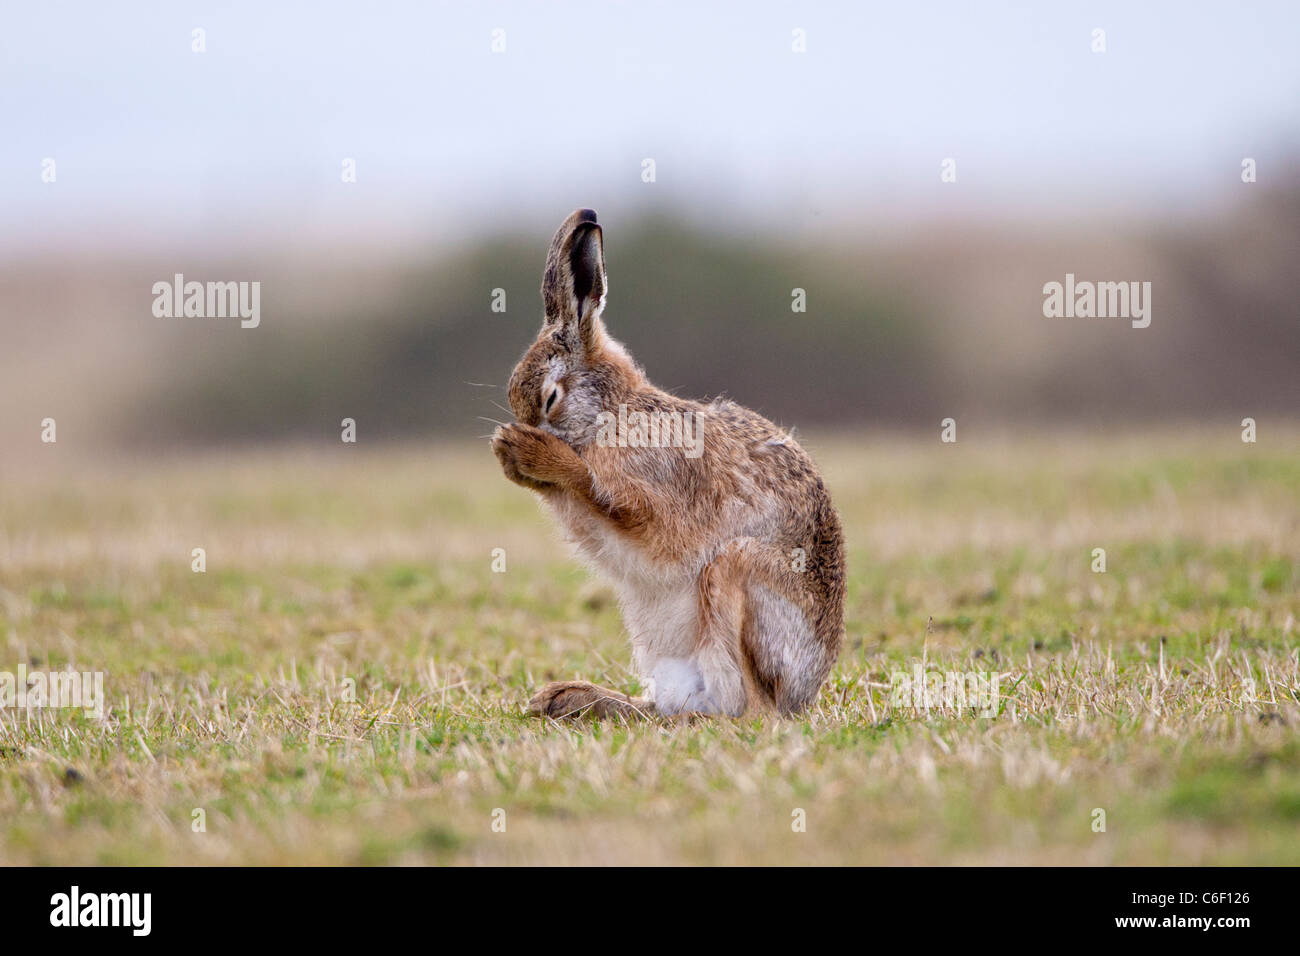 Lepus europaeus - European brown hare Stock Photo